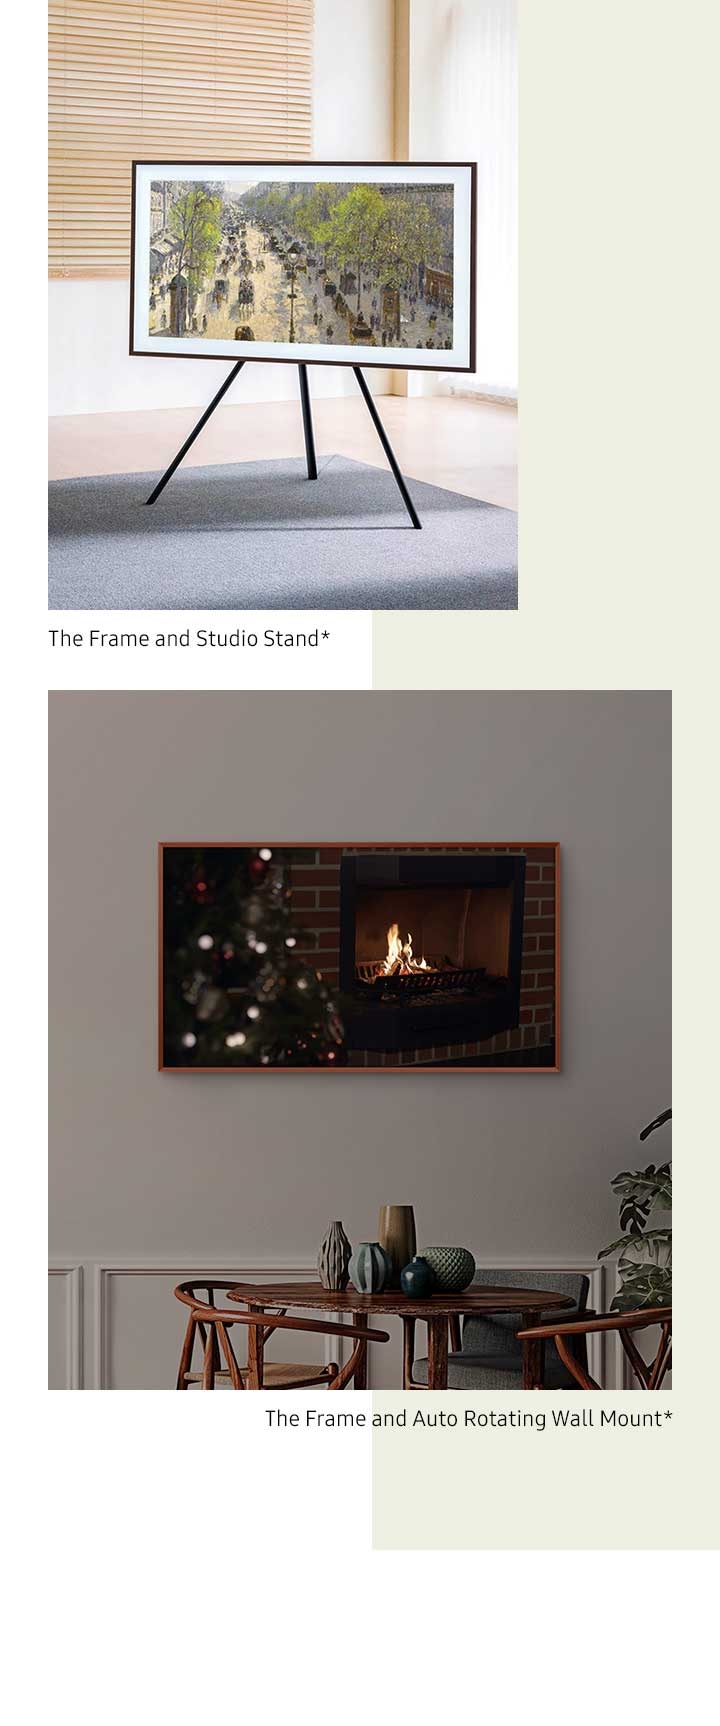 The Frame sur un support mural à rotation automatique pivote du mode paysage au mode portrait*. The Frame est monté sur un Studio Stand*.